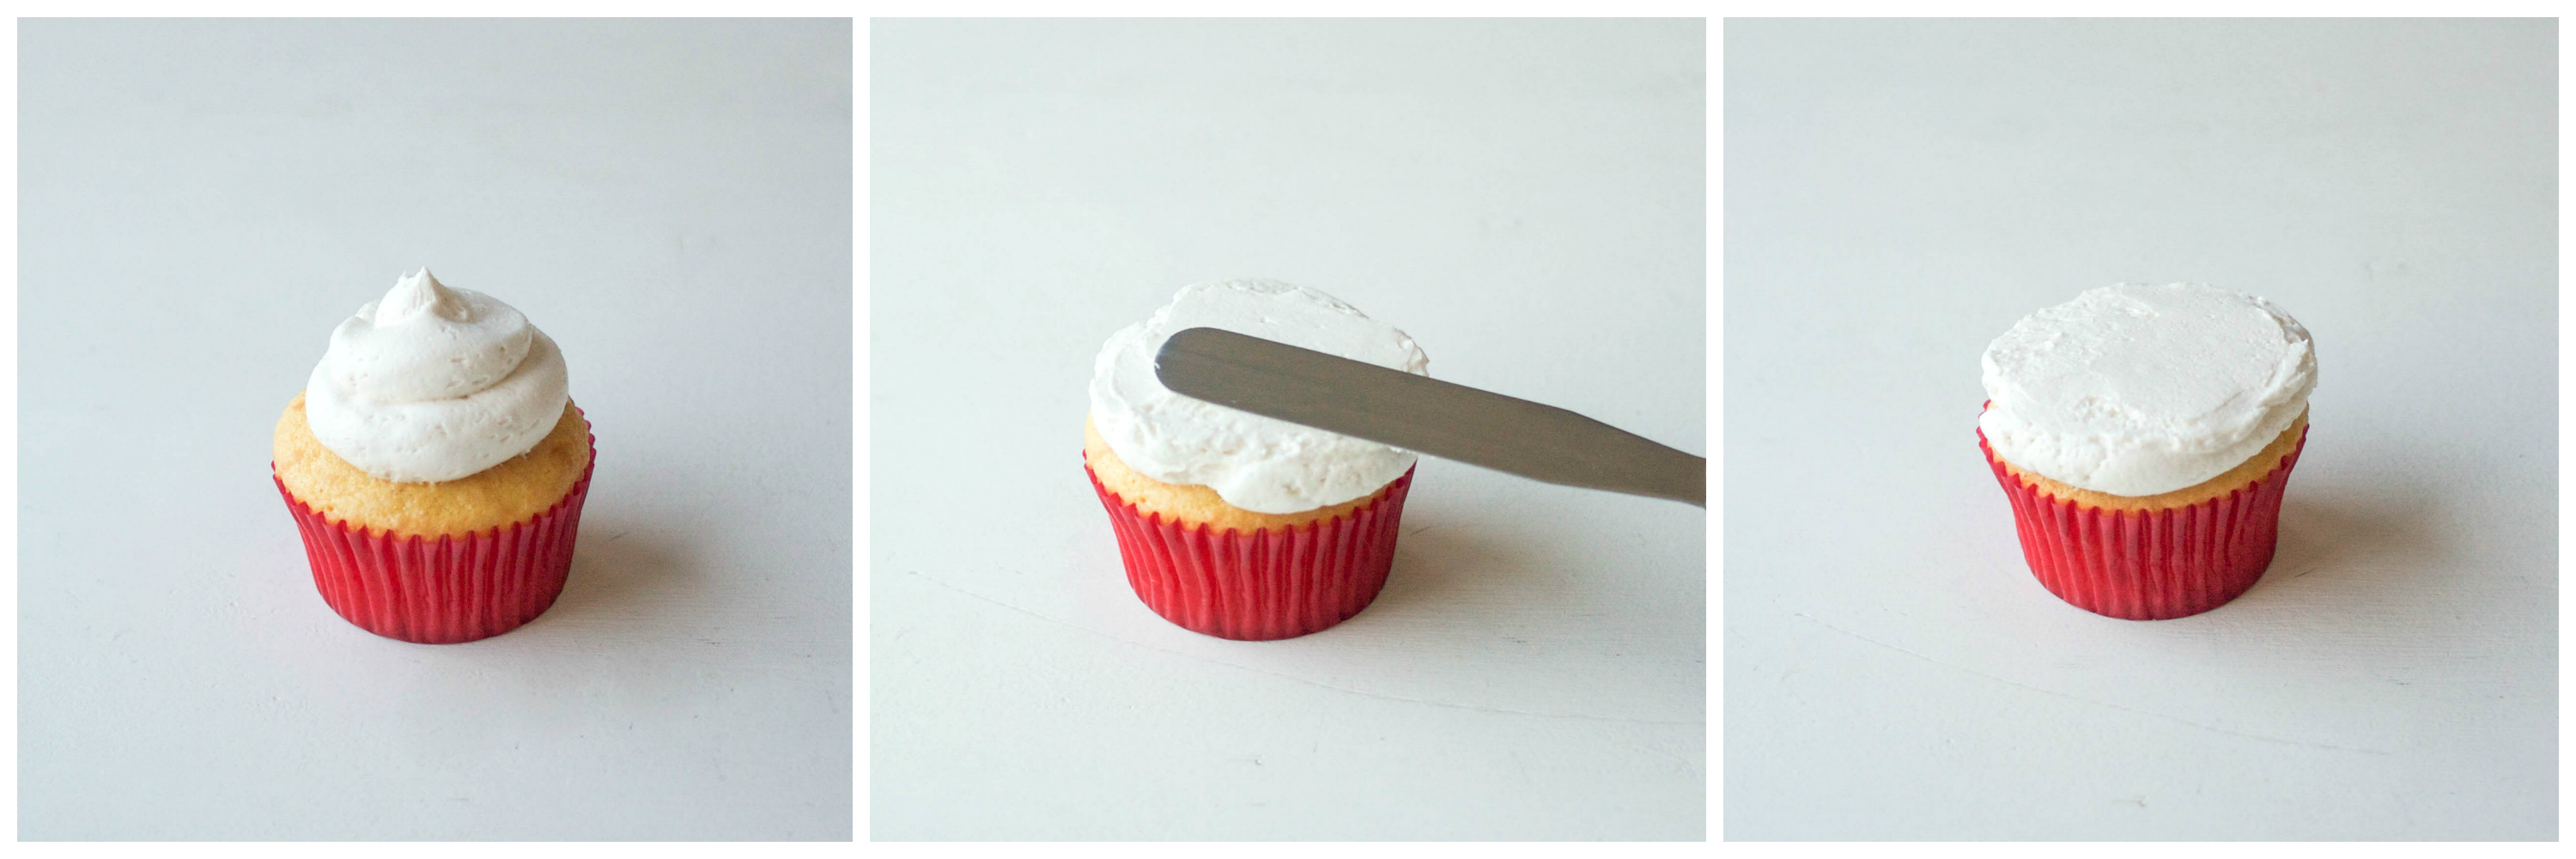 Icing A Flat Top Cupcake | Erin Gardner | Bluprint